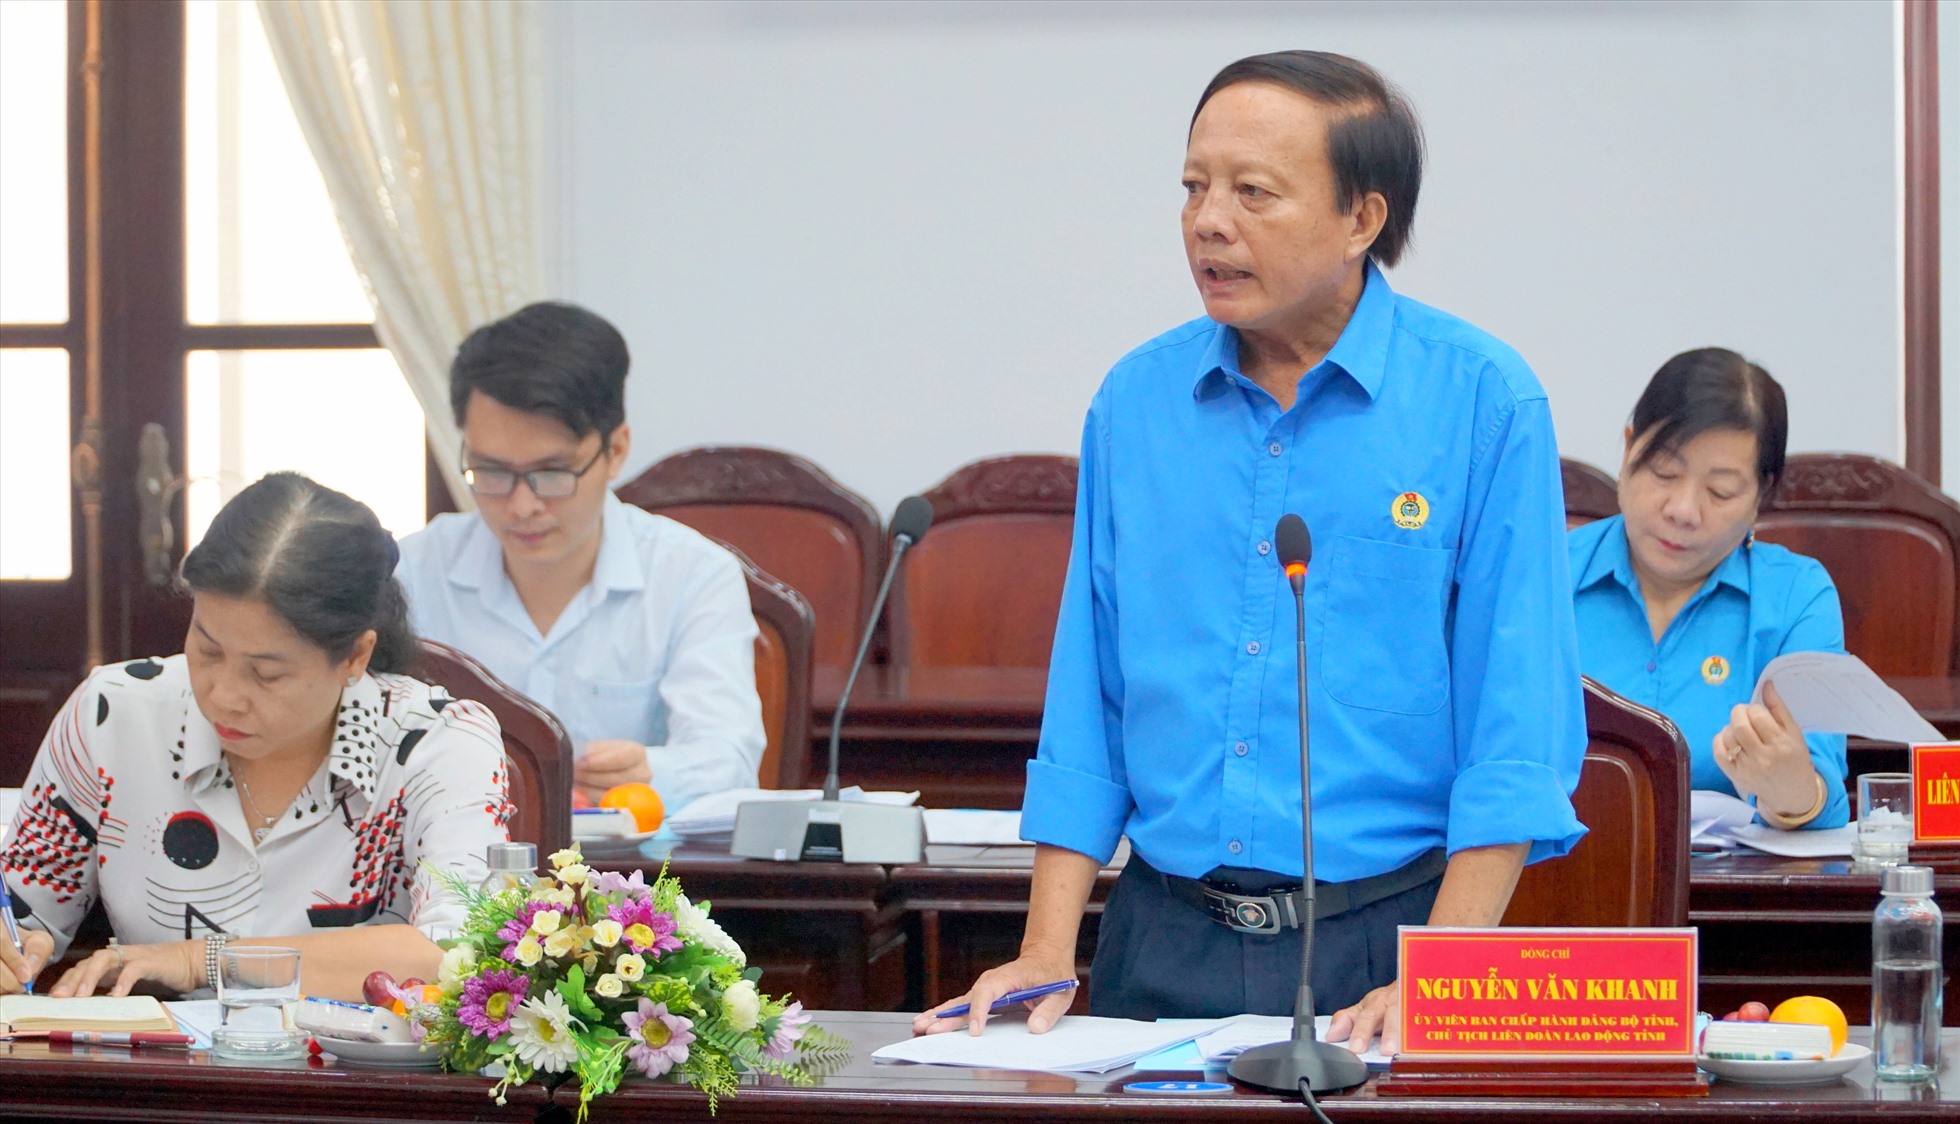 Chủ tịch LĐLĐ tỉnh Bạc Liêu Nguyễn Văn Khanh phát biểu giải trình thêm báo cáo với Đoàn khảo sát. Ảnh: Nhật Hồ